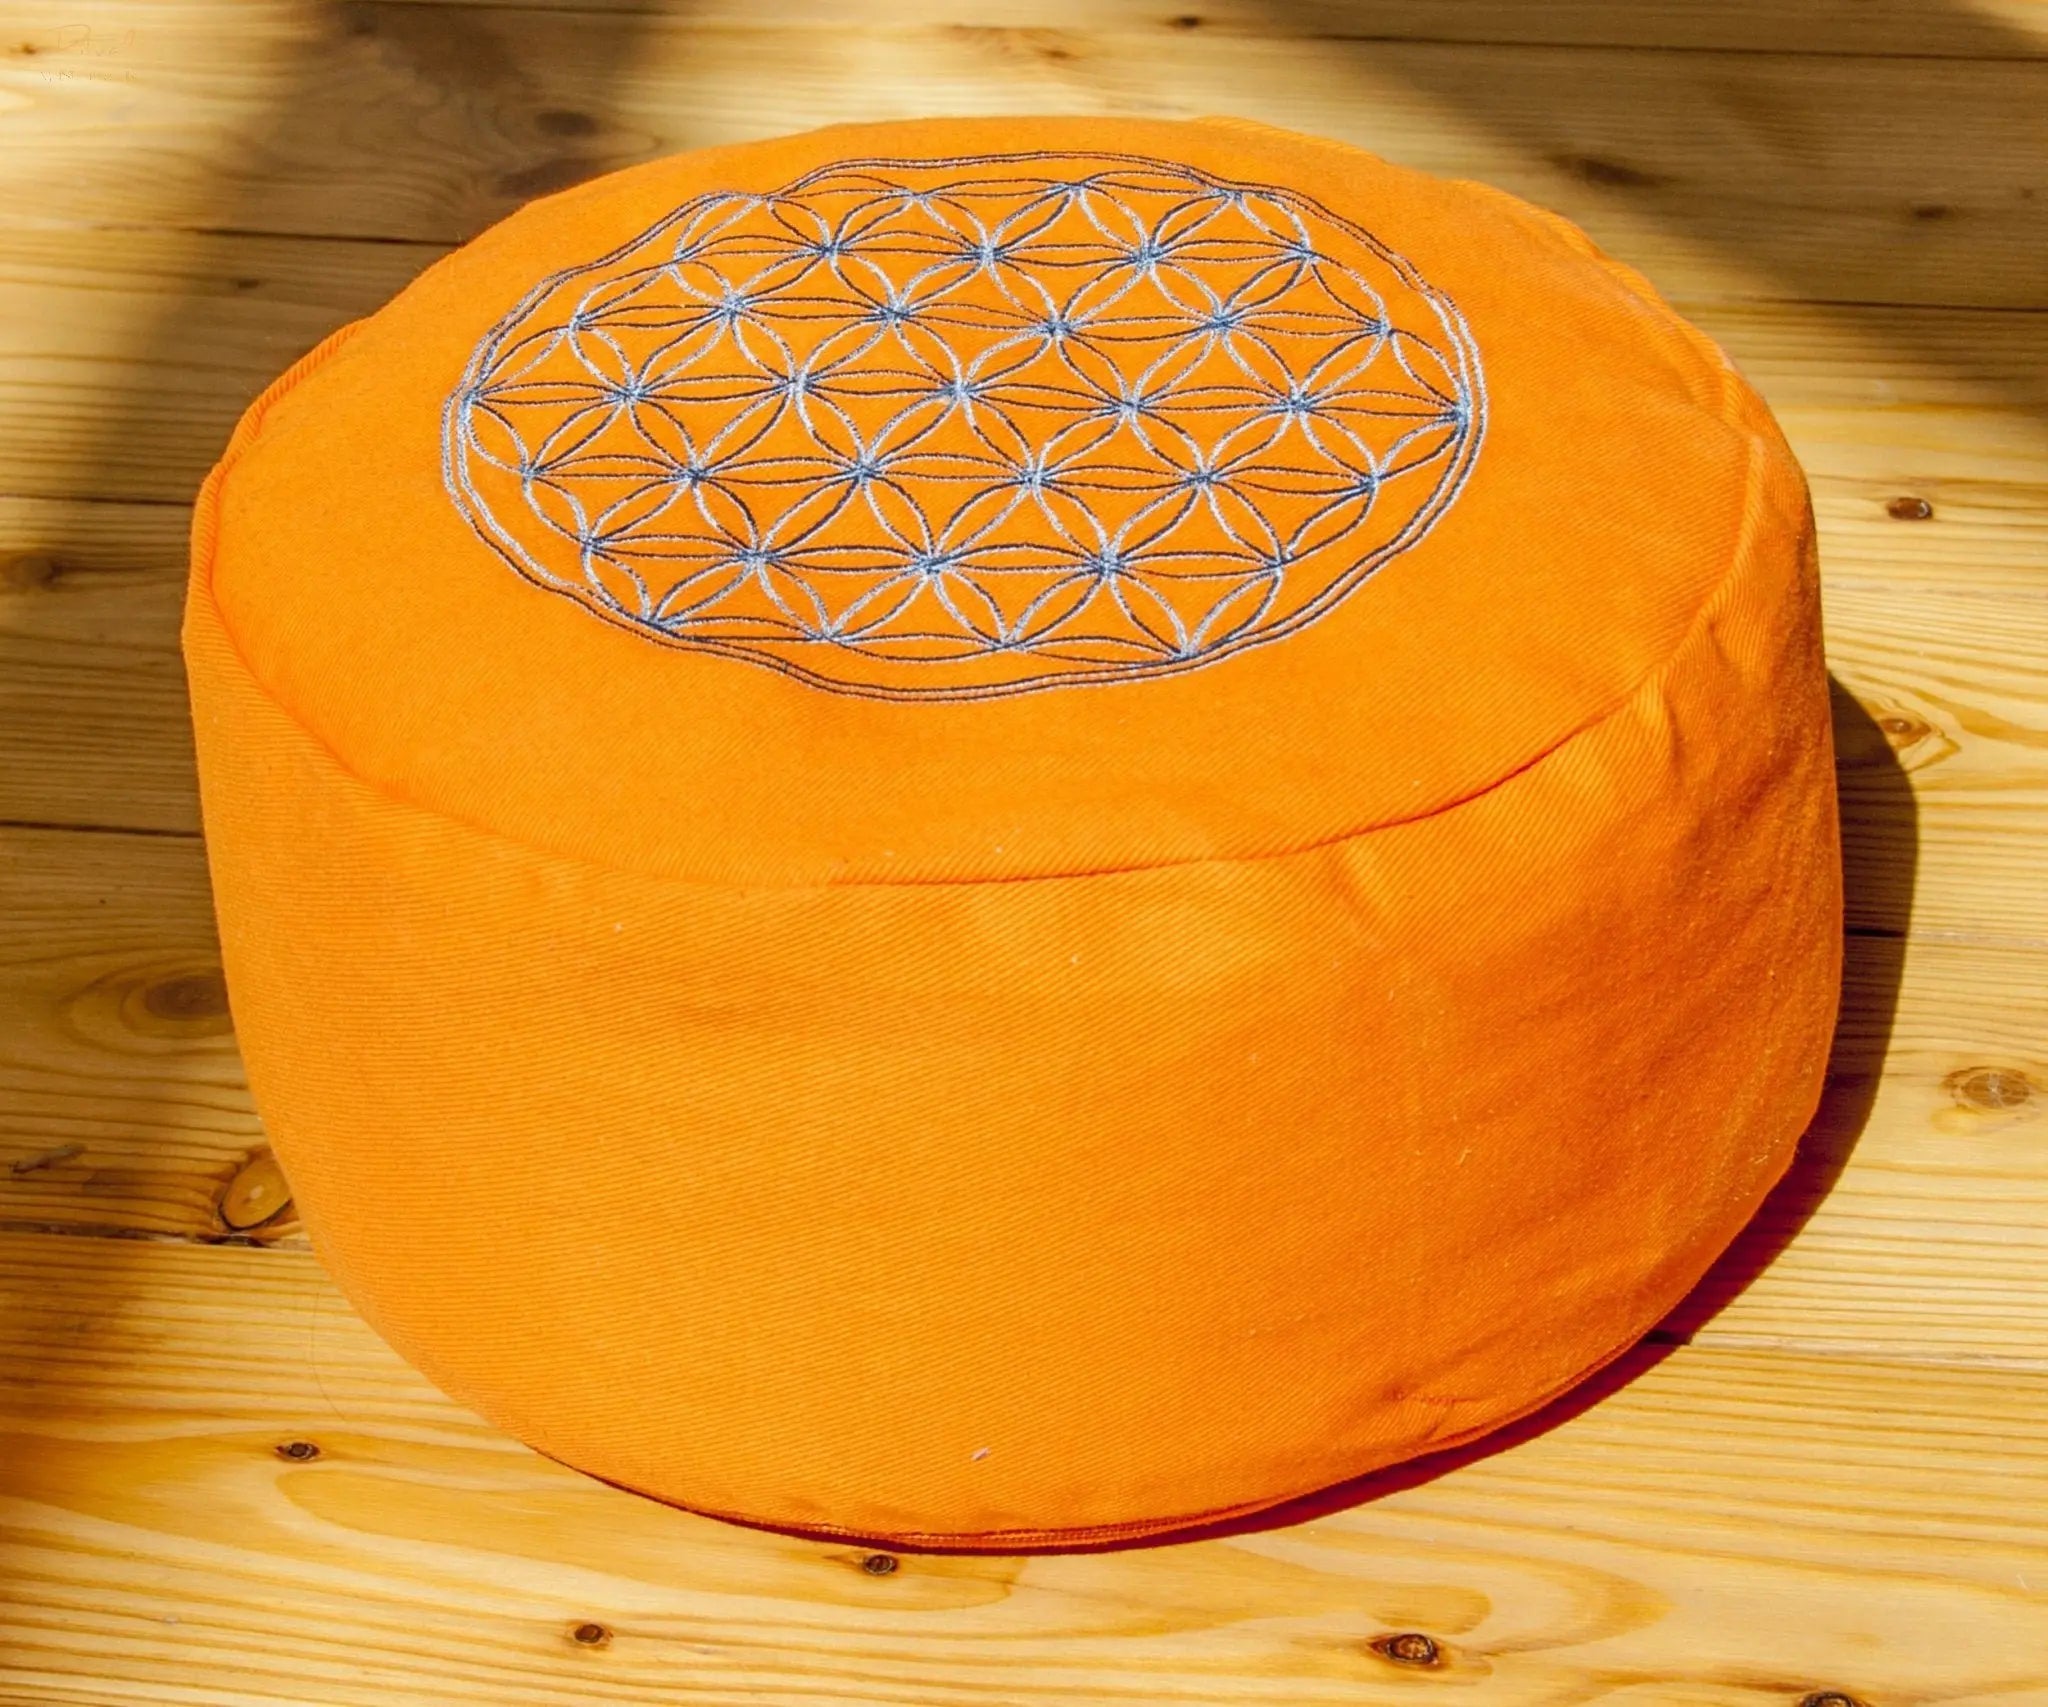 Blume des Lebens Meditationskissen - orange - mit Buchweizen gefüllt Berk